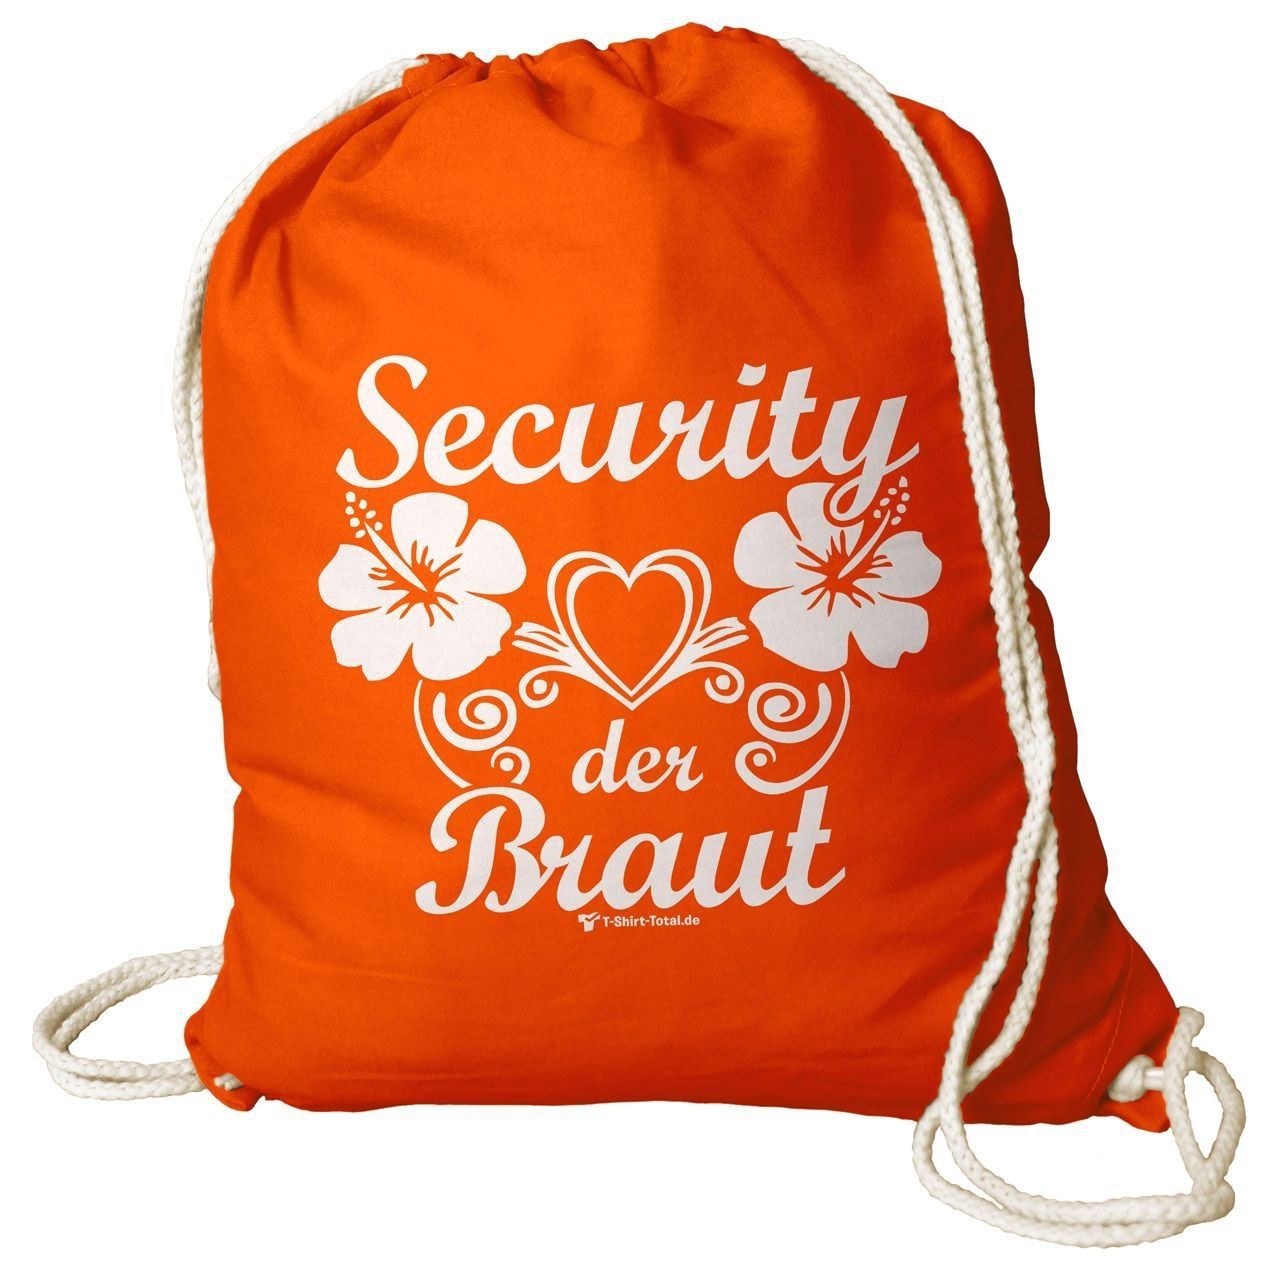 Security der Braut Rucksack Beutel orange